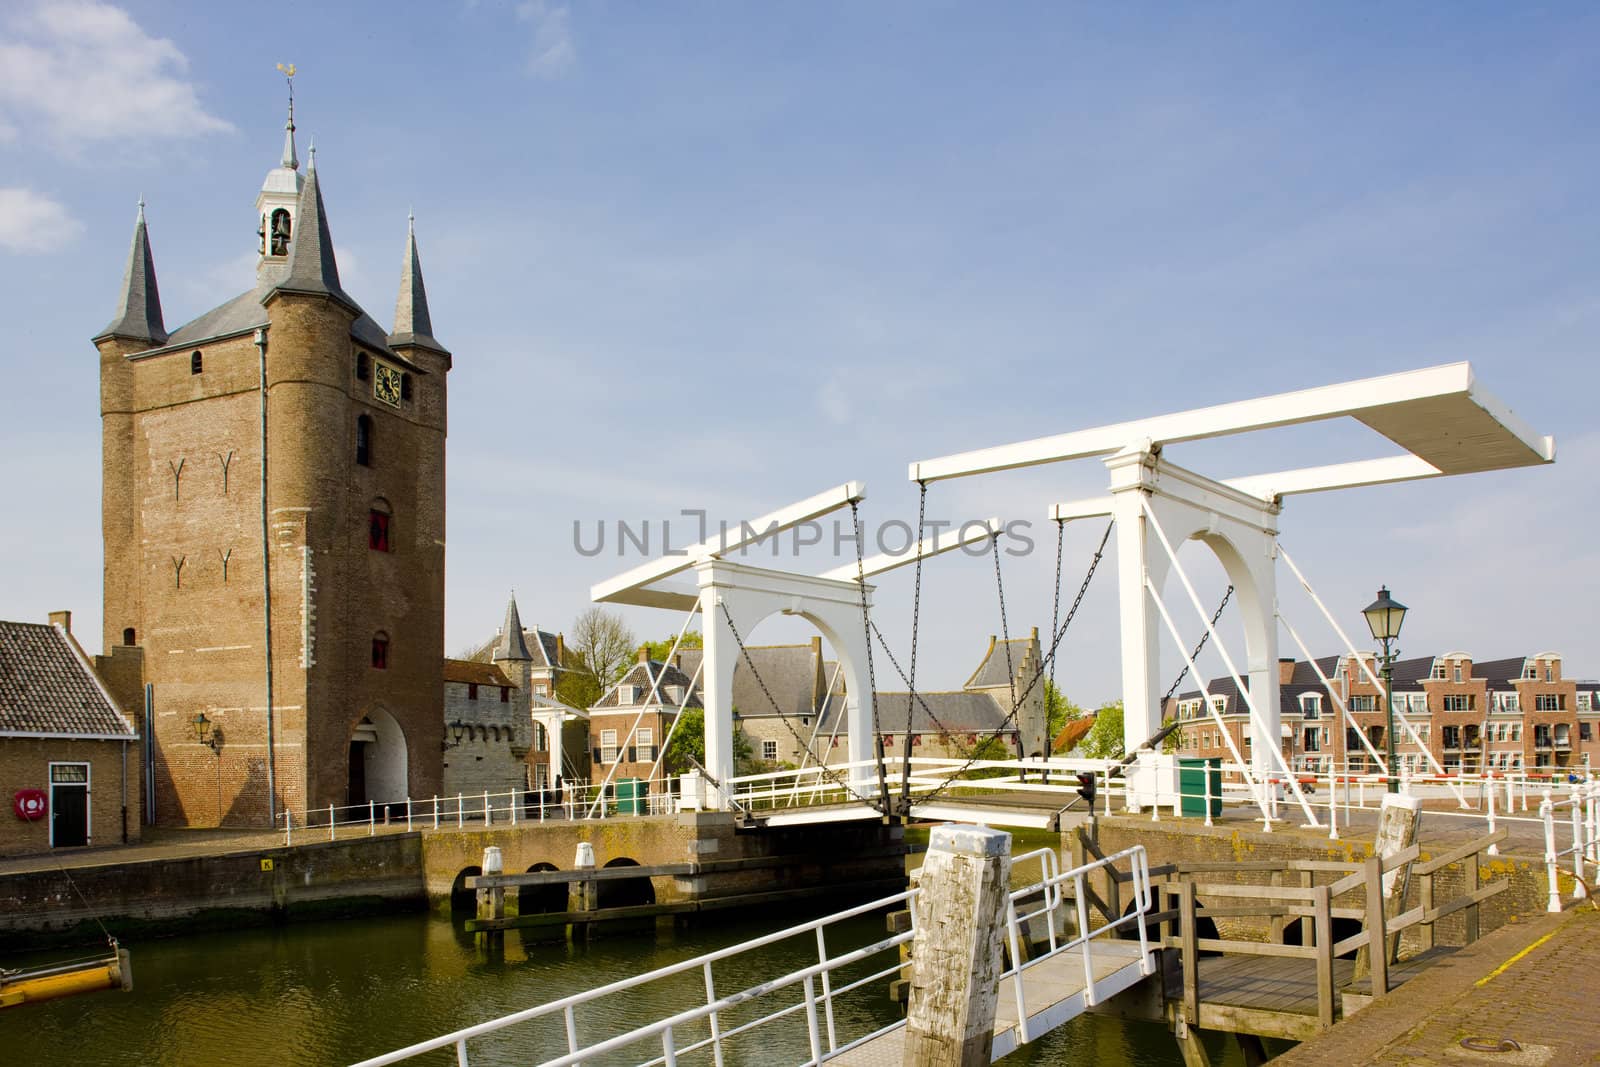 medieval gate and drawbridge, Zierikzee, Zeeland, Netherlands by phbcz